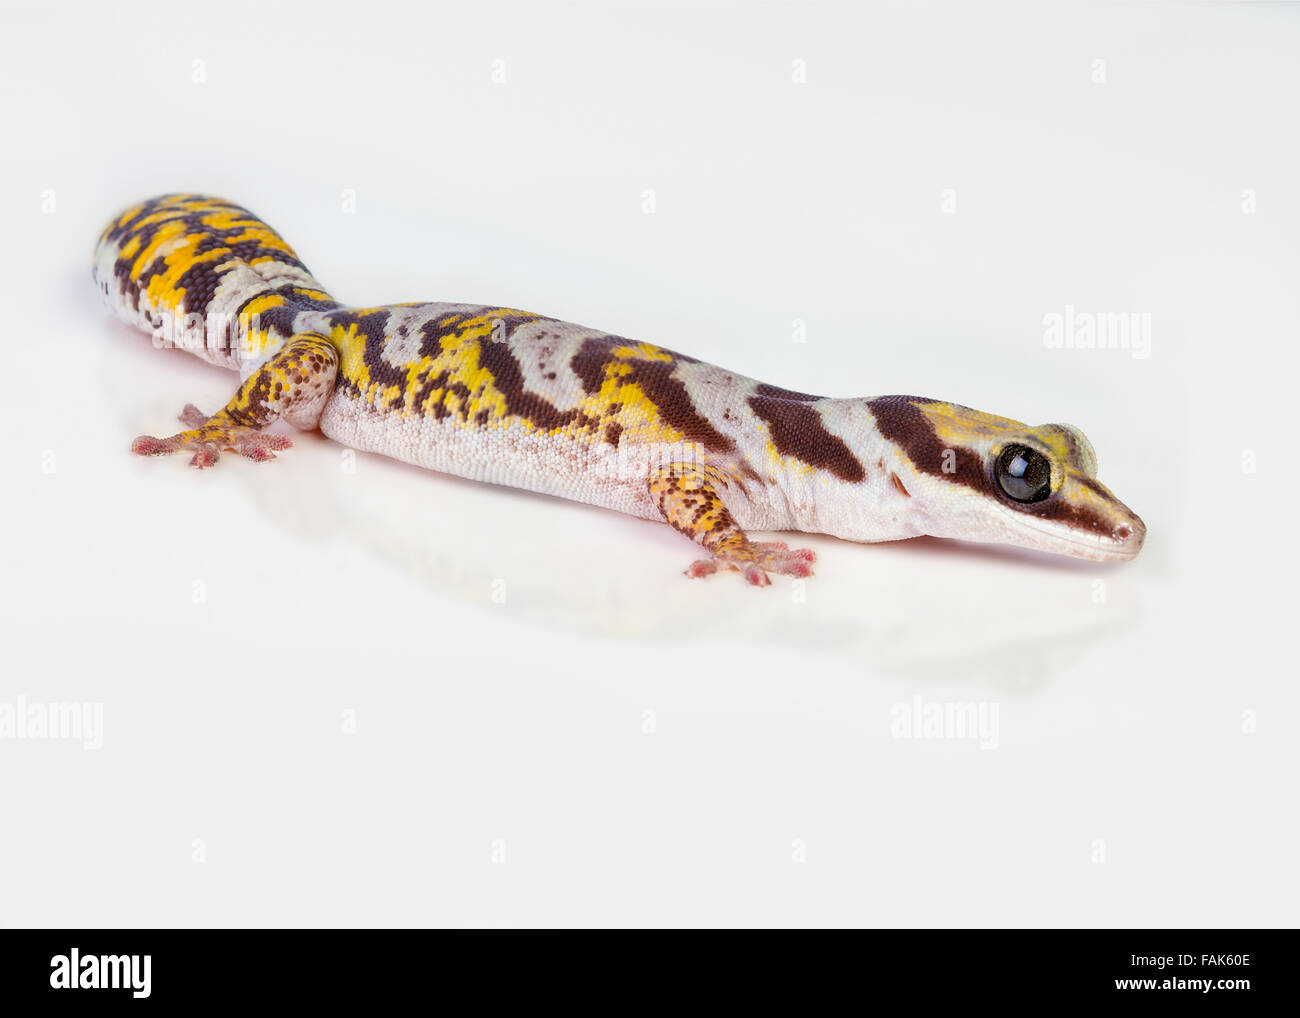 A Castelnau's Velvet Gecko (Oedura Castelnaui) on a white background Stock Photo